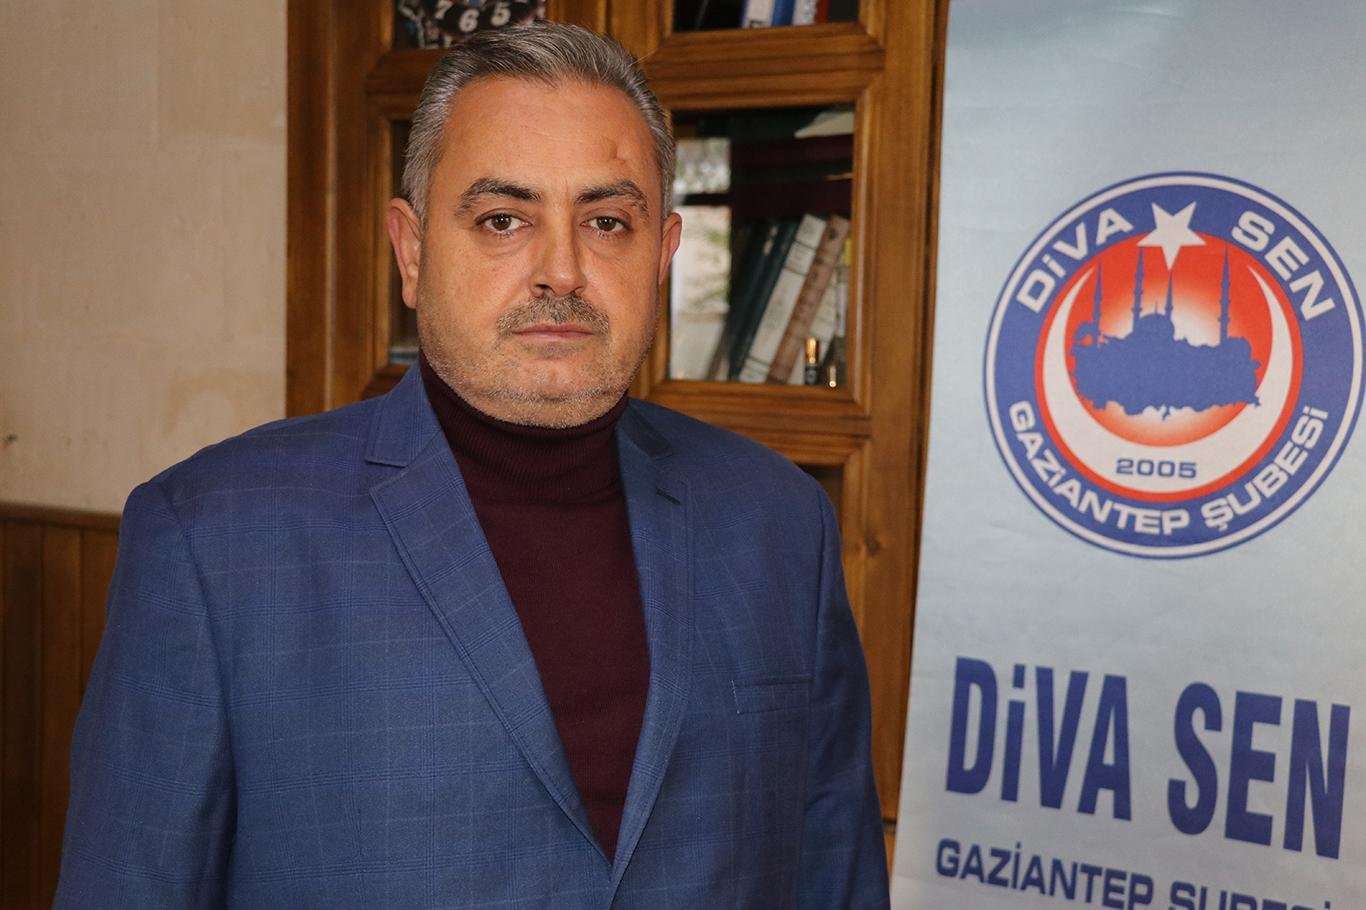 Diva-Sen Gaziantep Şube Başkanı Acem: Camiler huzur bulunan mekanlardır